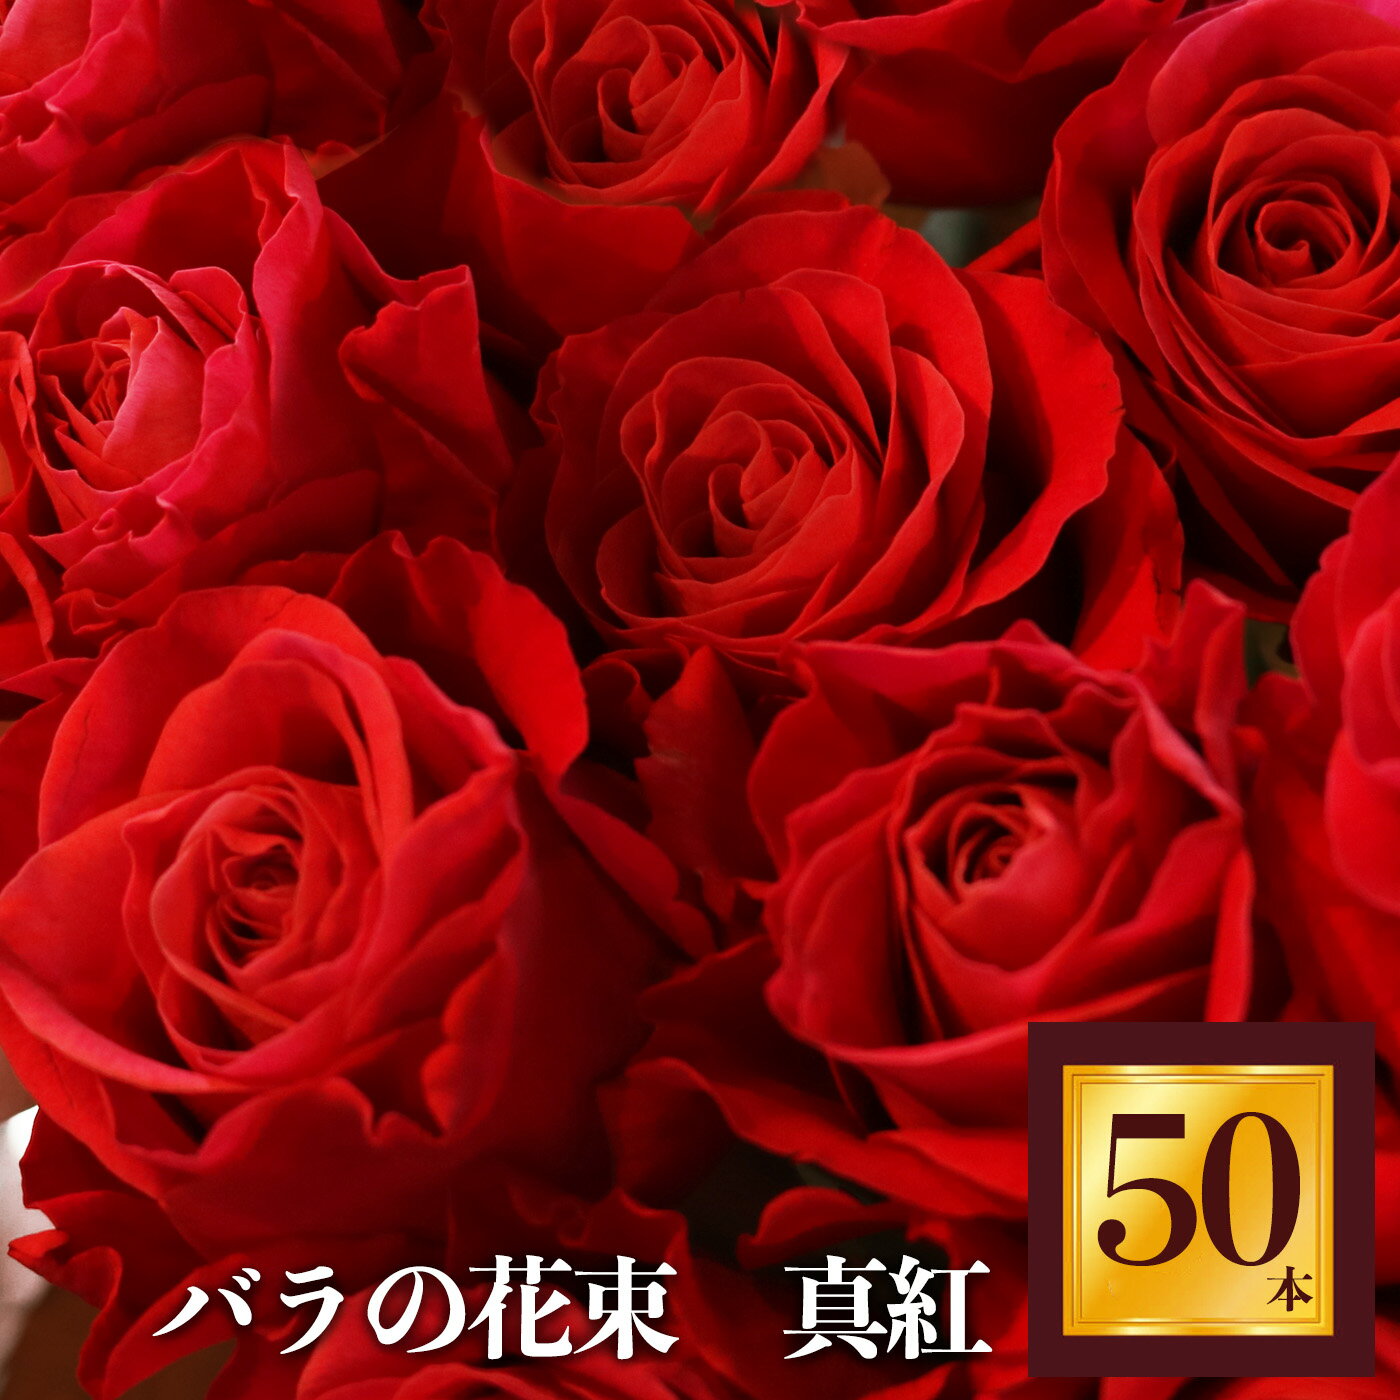 Heguri Rose バラの花束 (赤バラ 50本)ローズ フラワー 薔薇 新鮮 高品質 豪華 真紅のバラ 綺麗 平群のバラ 花束 平群ブランド 誕生日 記念日 お祝い